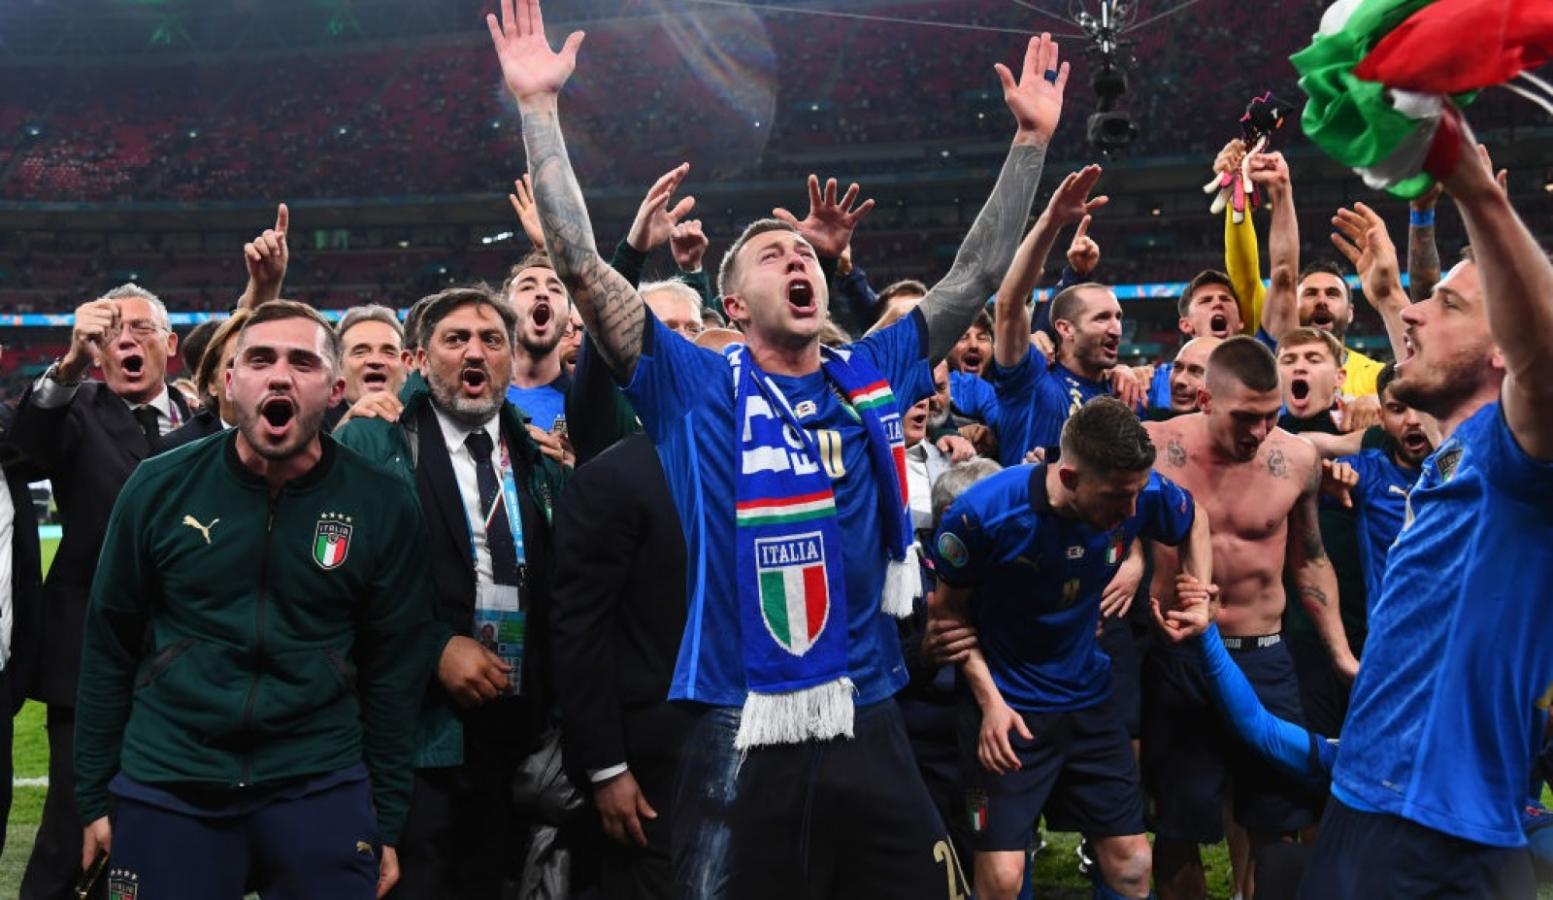 Imagen Italia campeón en resultado y juego. 